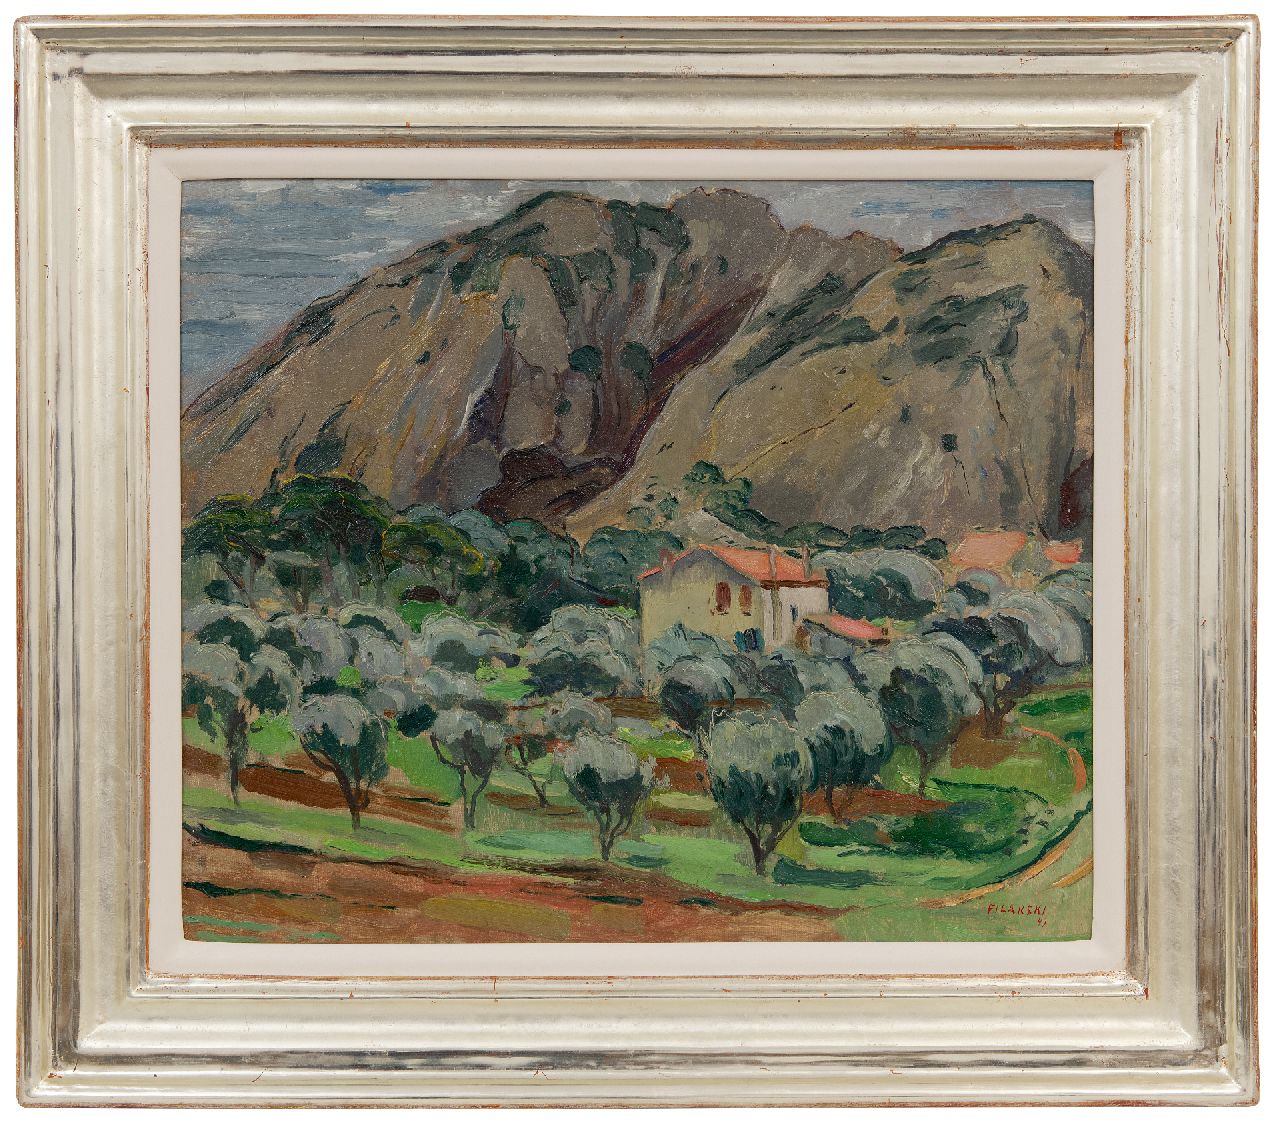 Filarski D.H.W.  | 'Dirk' Herman Willem Filarski | Paintings offered for sale | South European landscape, oil on canvas 45.6 x 54.8 cm, signed l.r. and dated '49